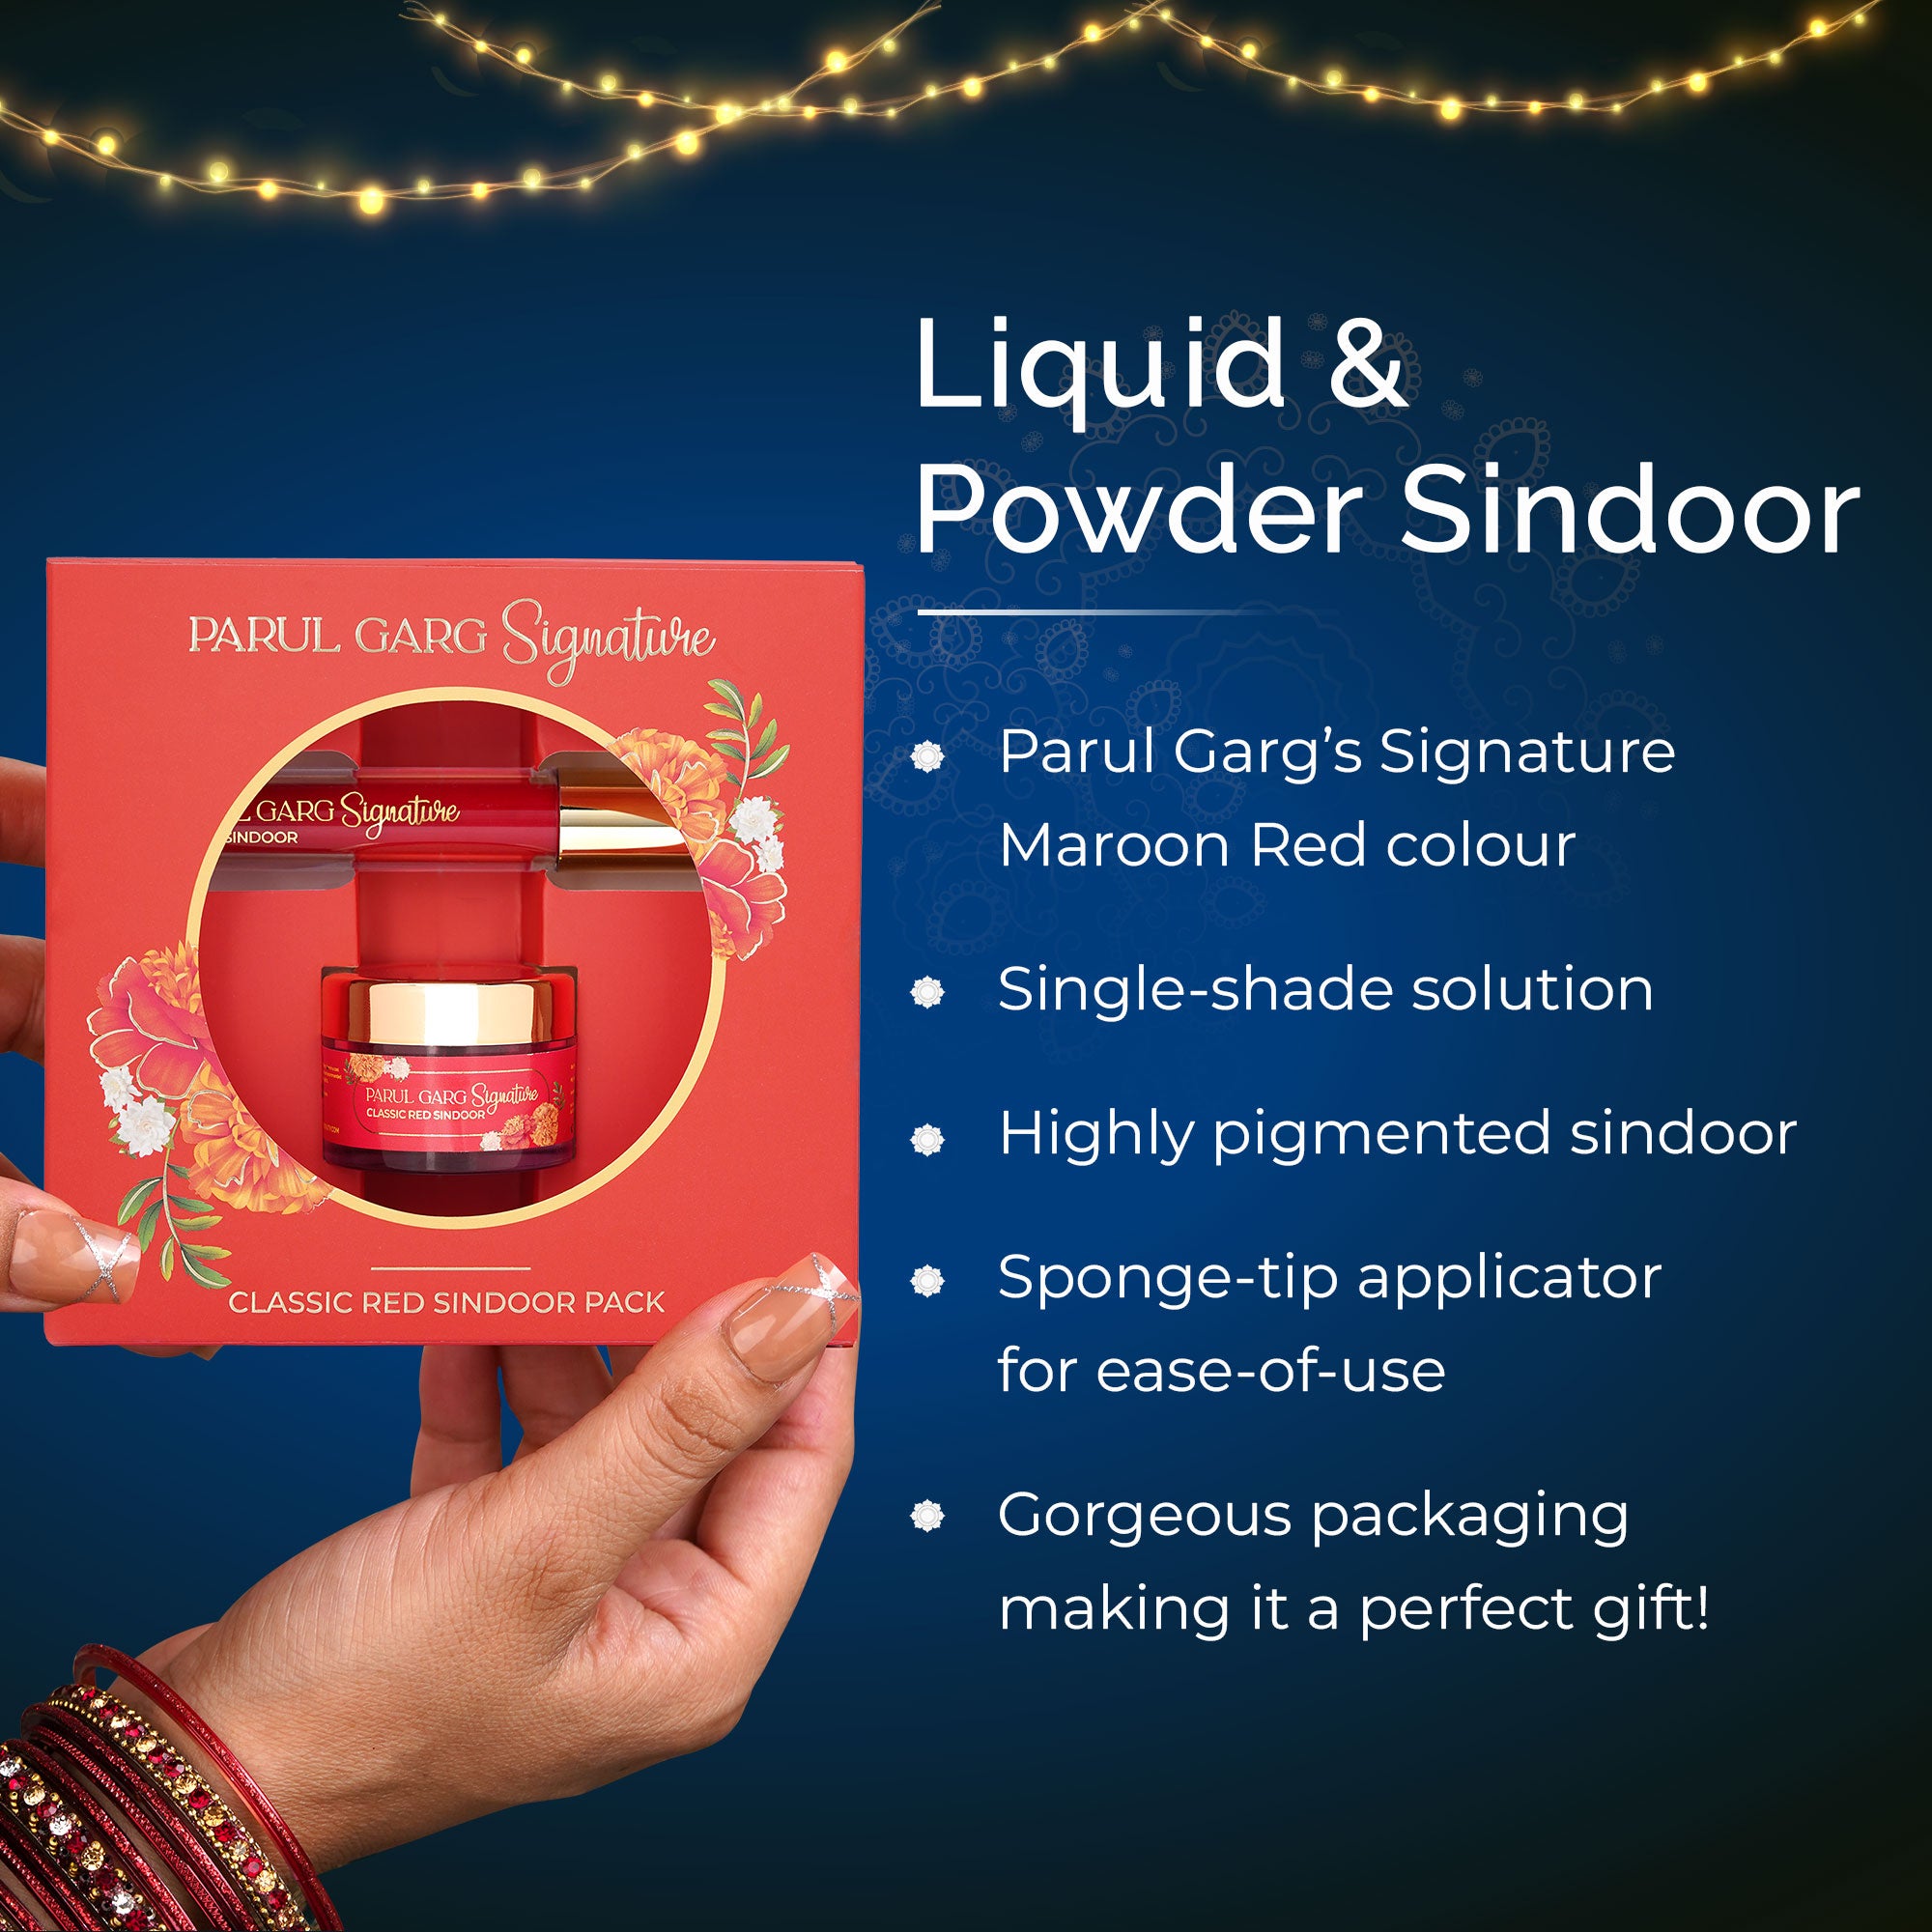 Signature Sindoor Pack: Liquid & Powder Sindoor